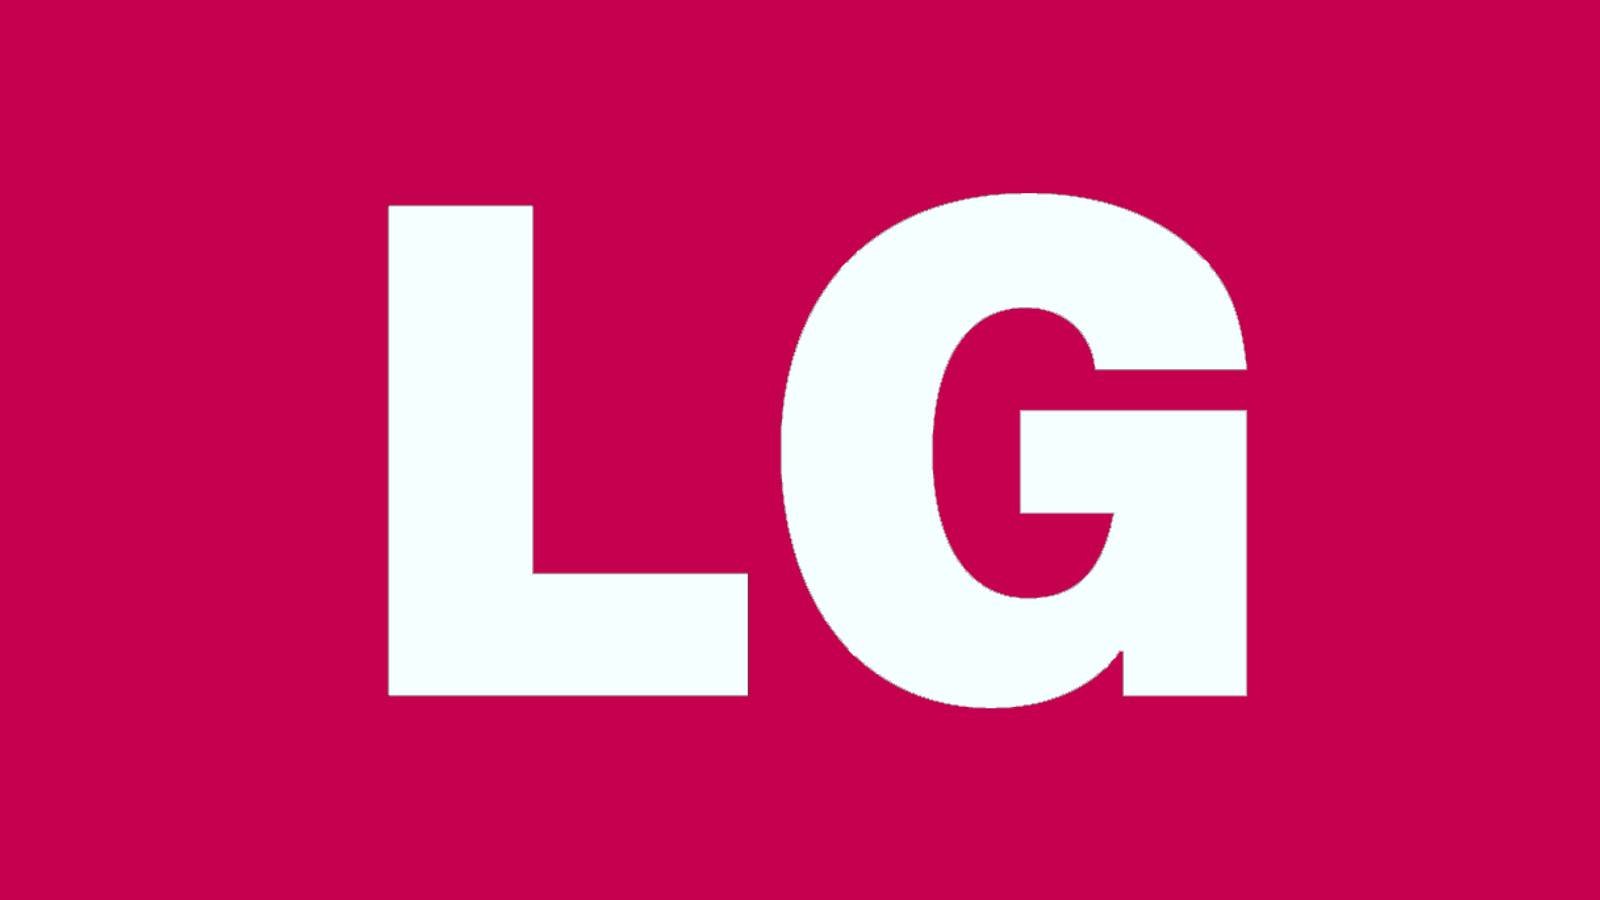 LG rozwiązuje poważny problem telewizorów ludowych na całym świecie